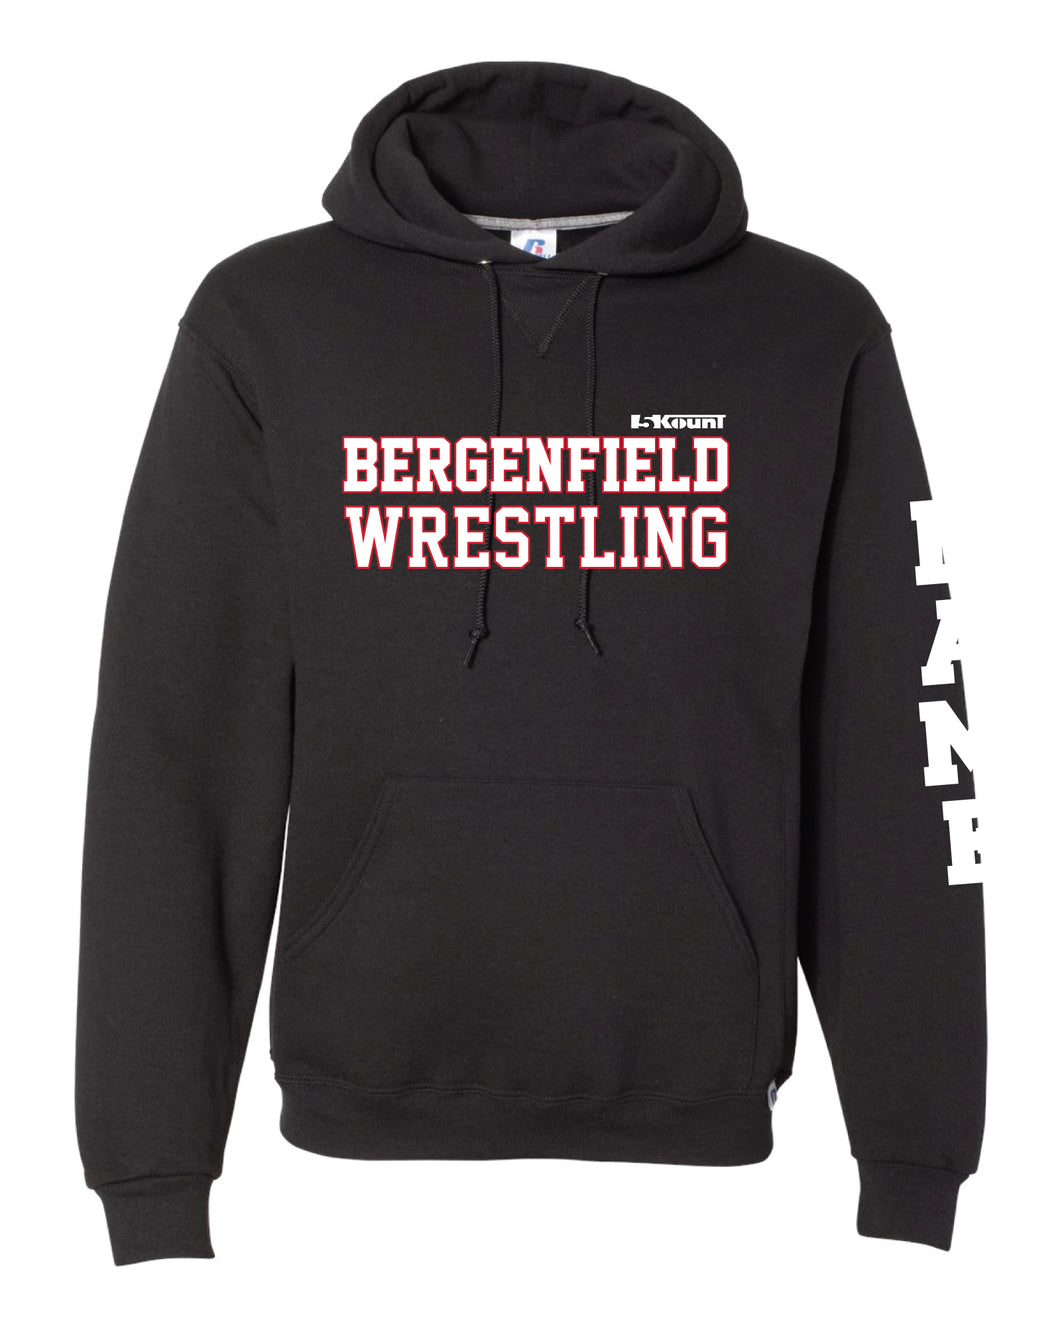 Bergenfield Wrestling Russell Athletic Cotton Hoodie - Black - 5KounT2018